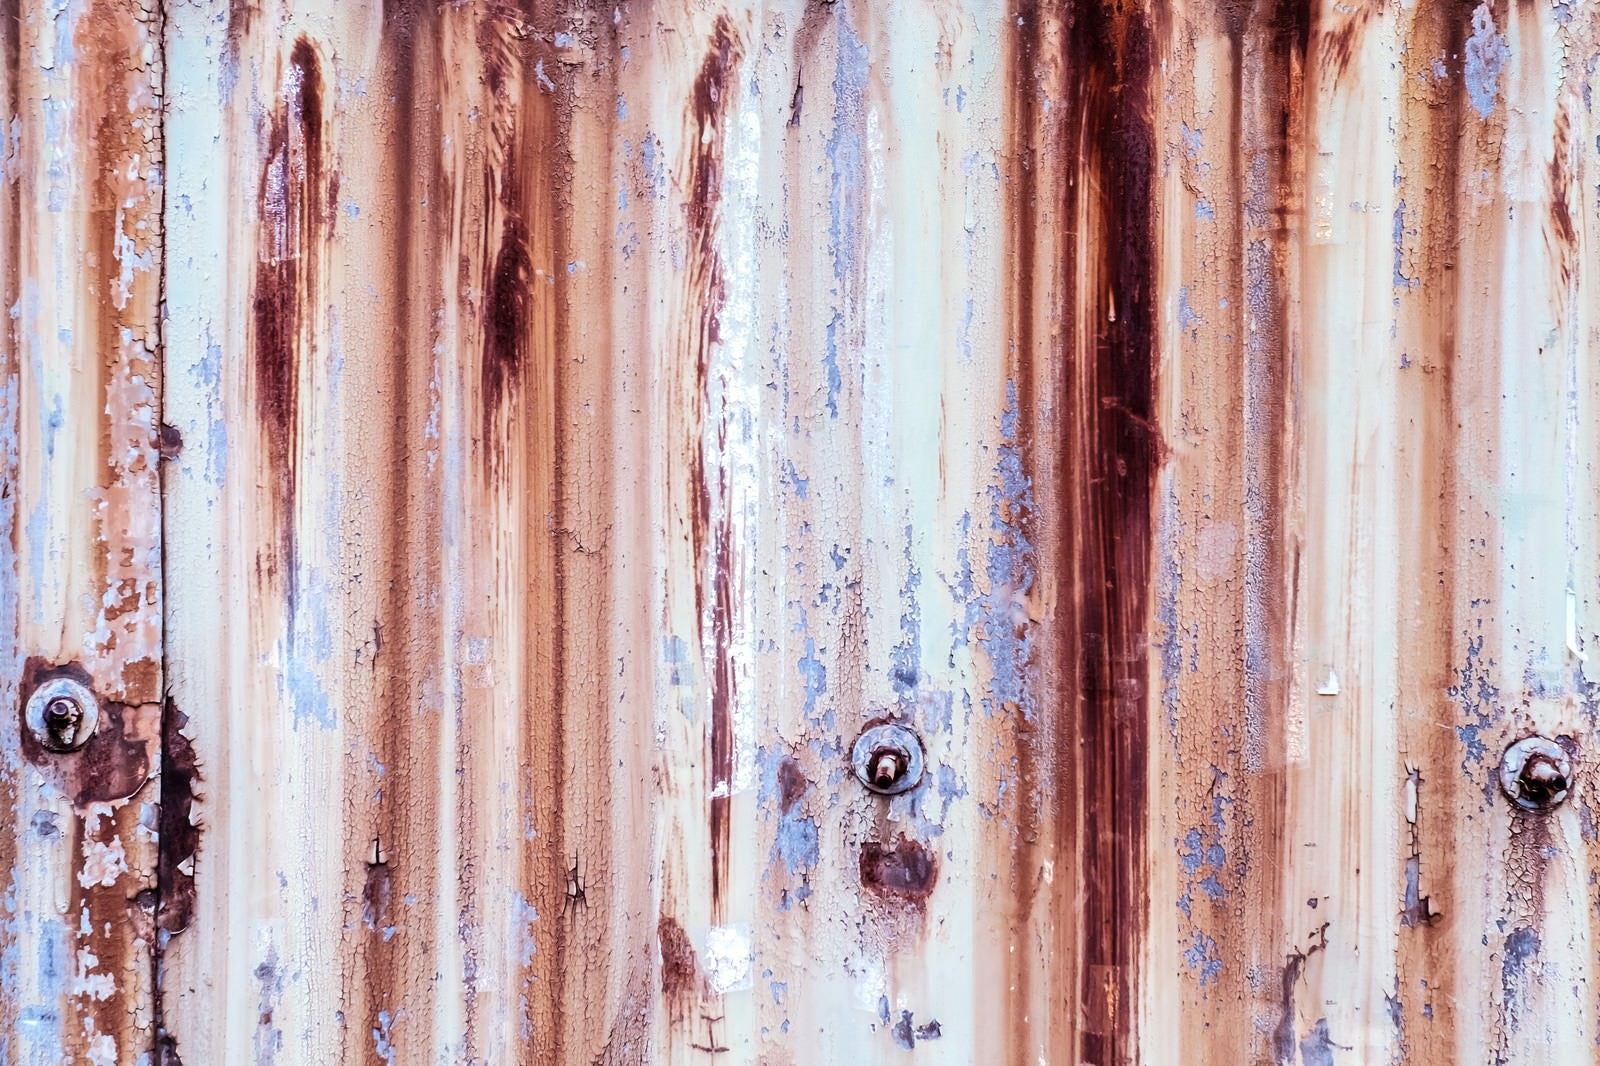 「サビて木目に見える壁」の写真